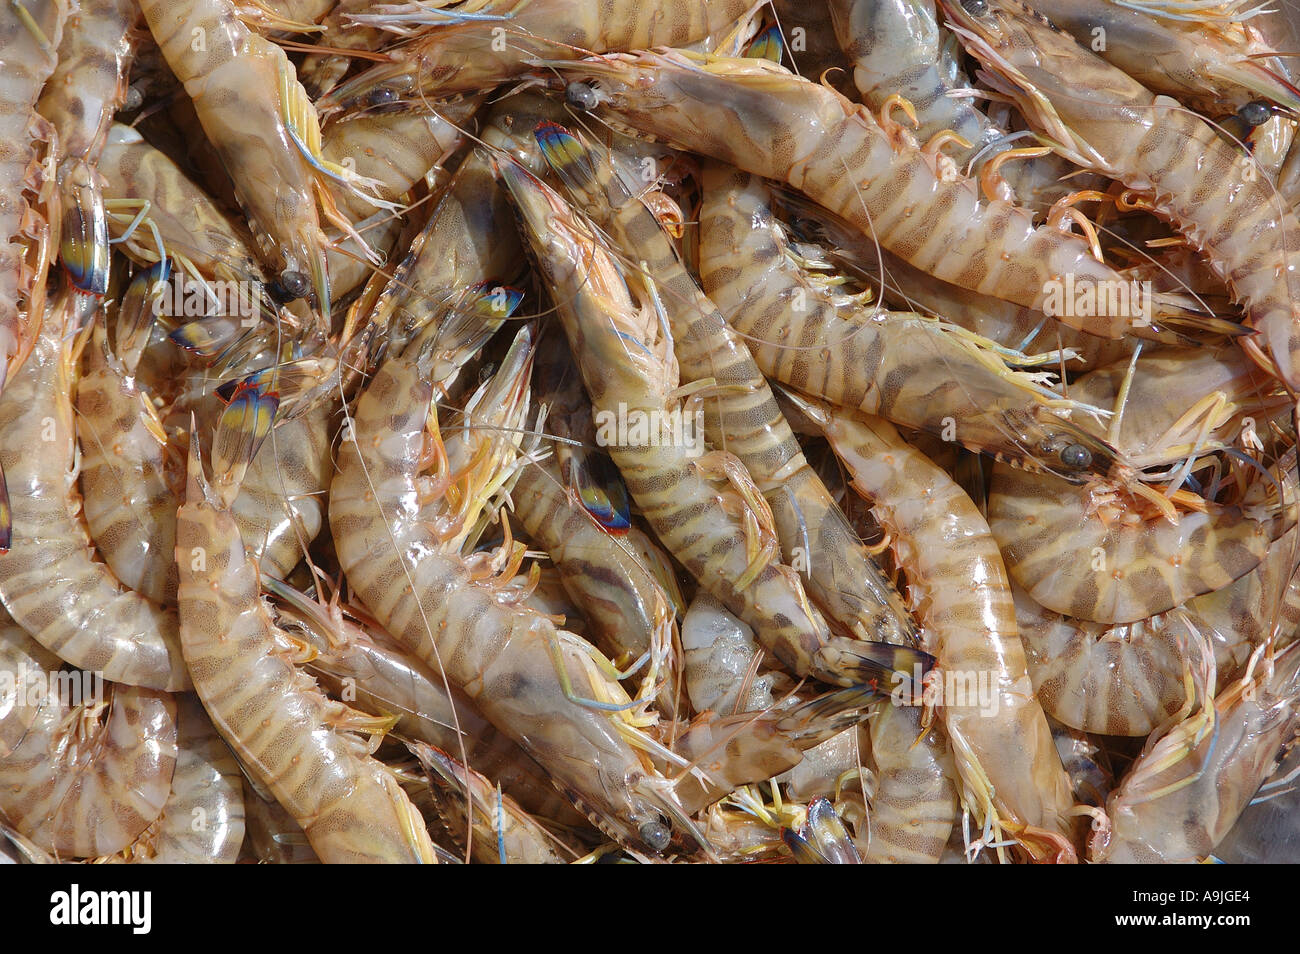 Raw Black Tiger Prawn Shrimp Penaeus monodon Stock Photo